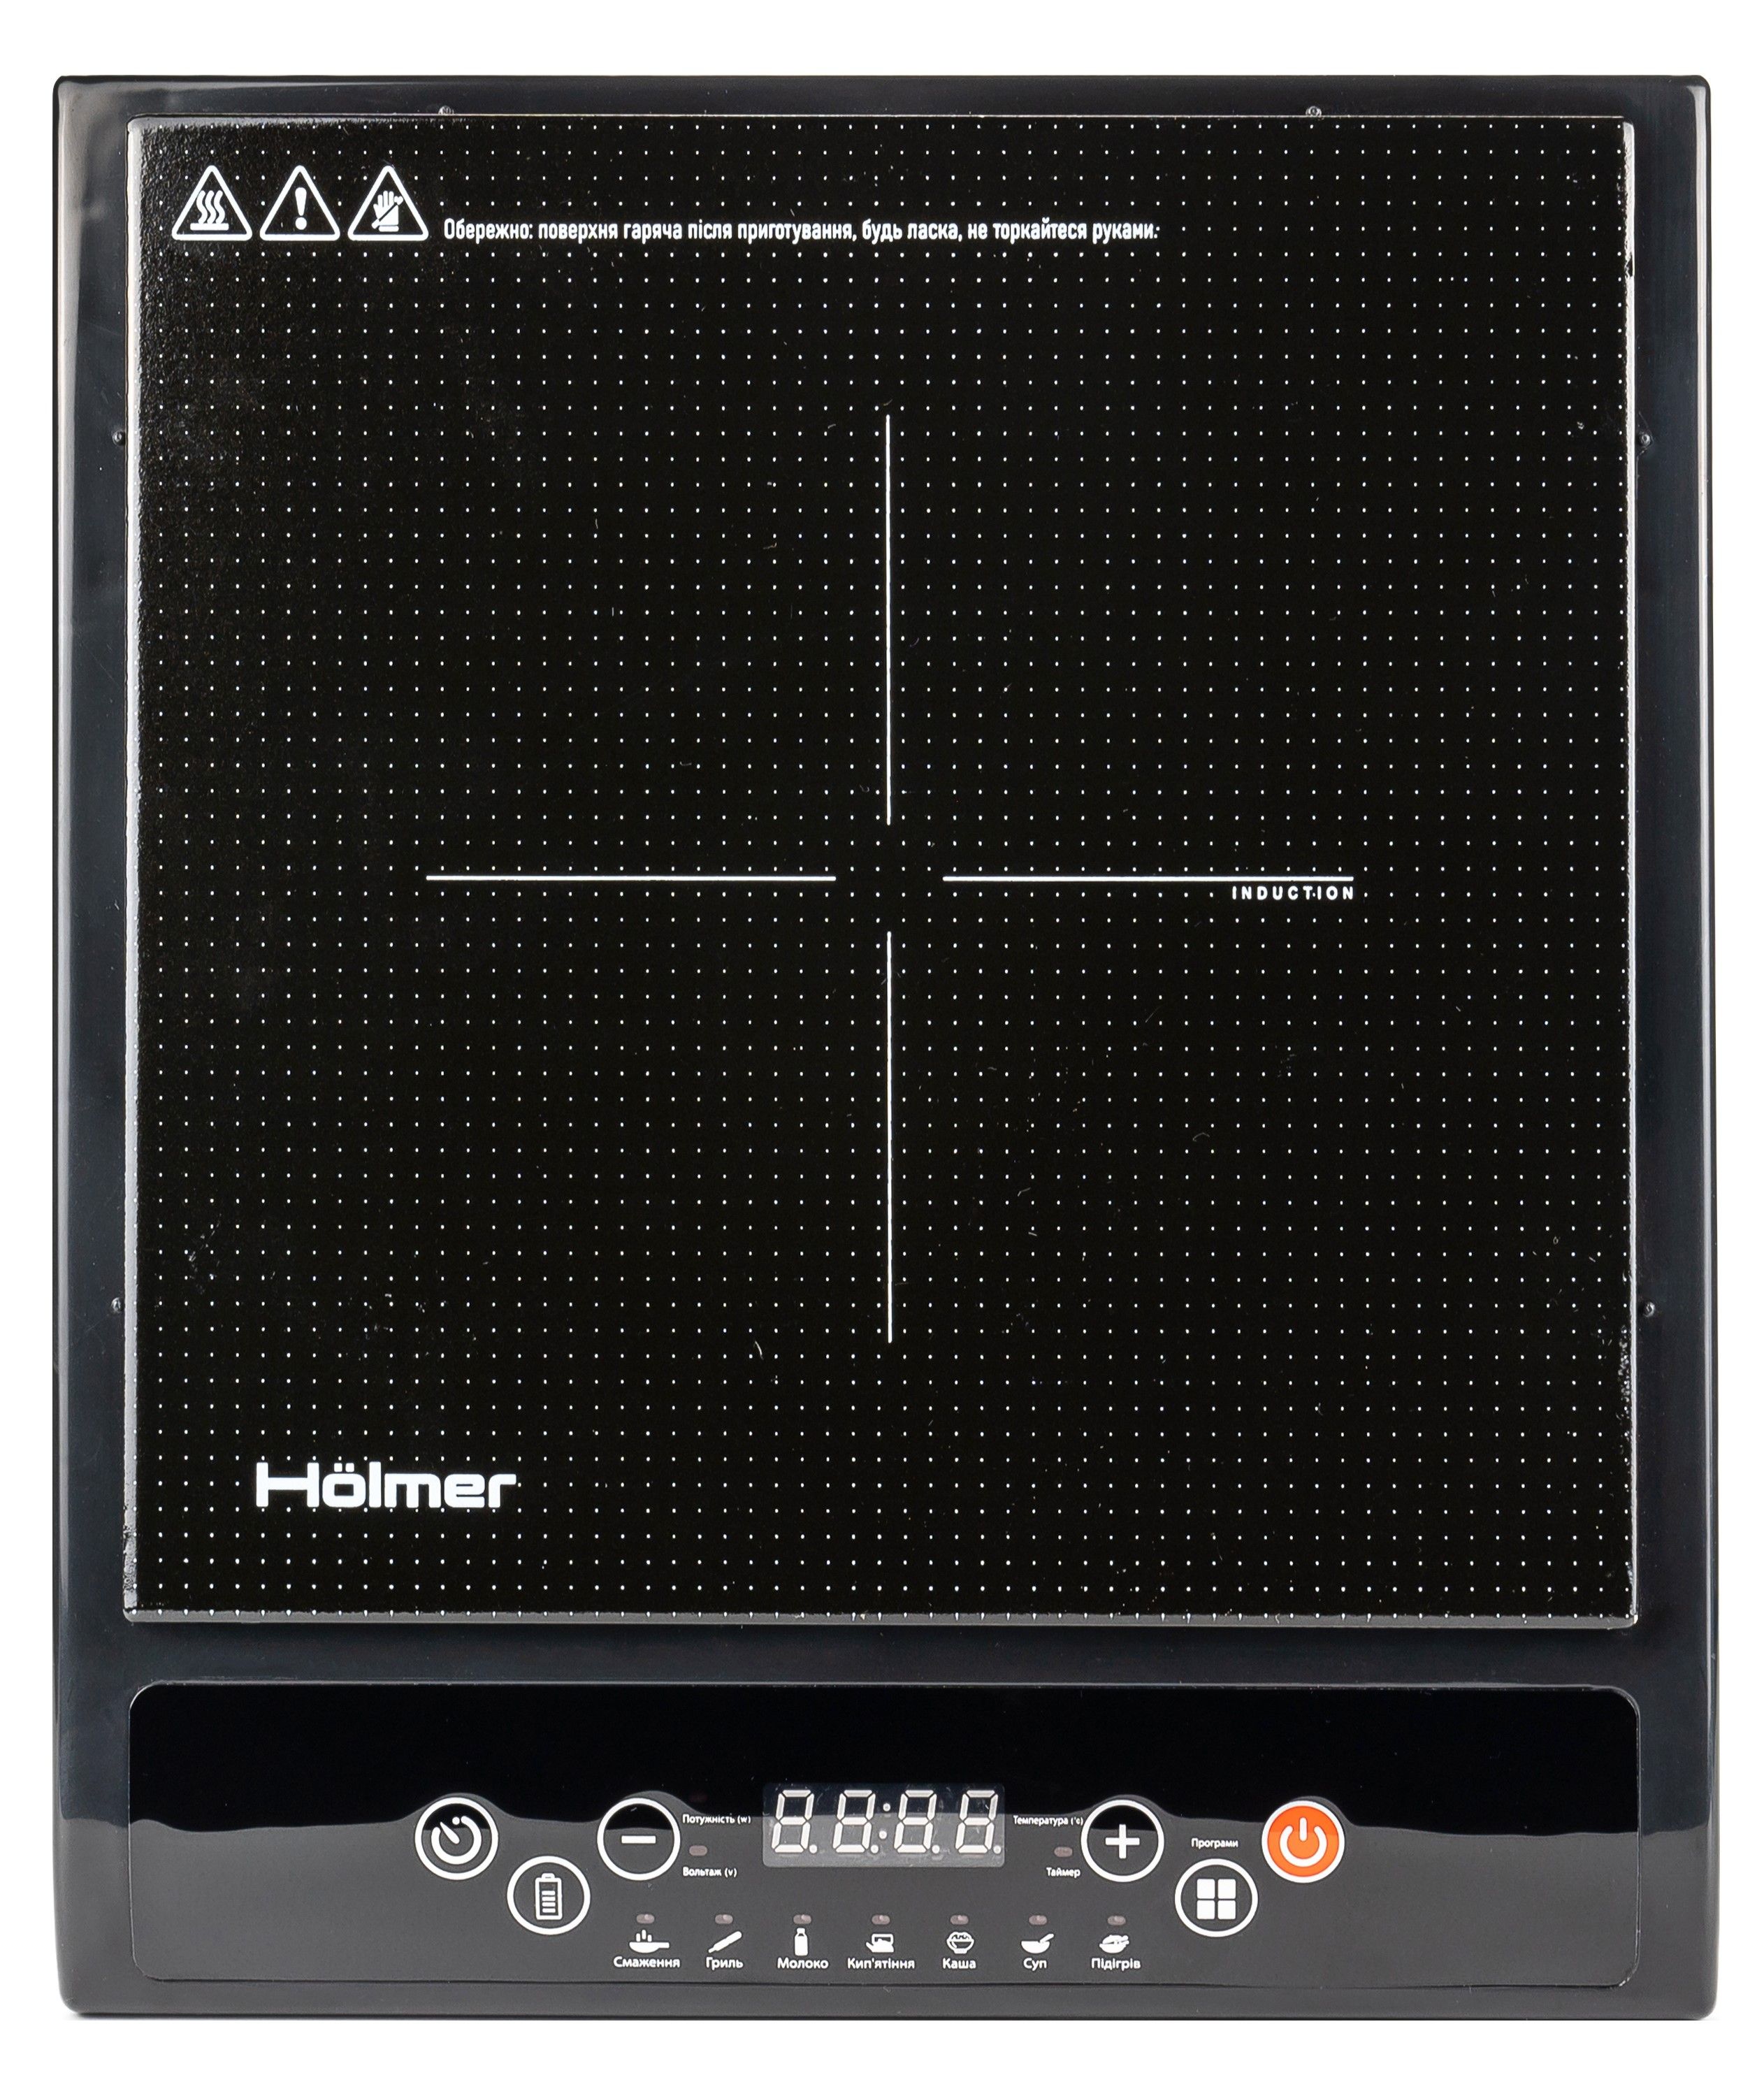 Отзывы настольная плита с дисплеем Holmer HIP-252C в Украине